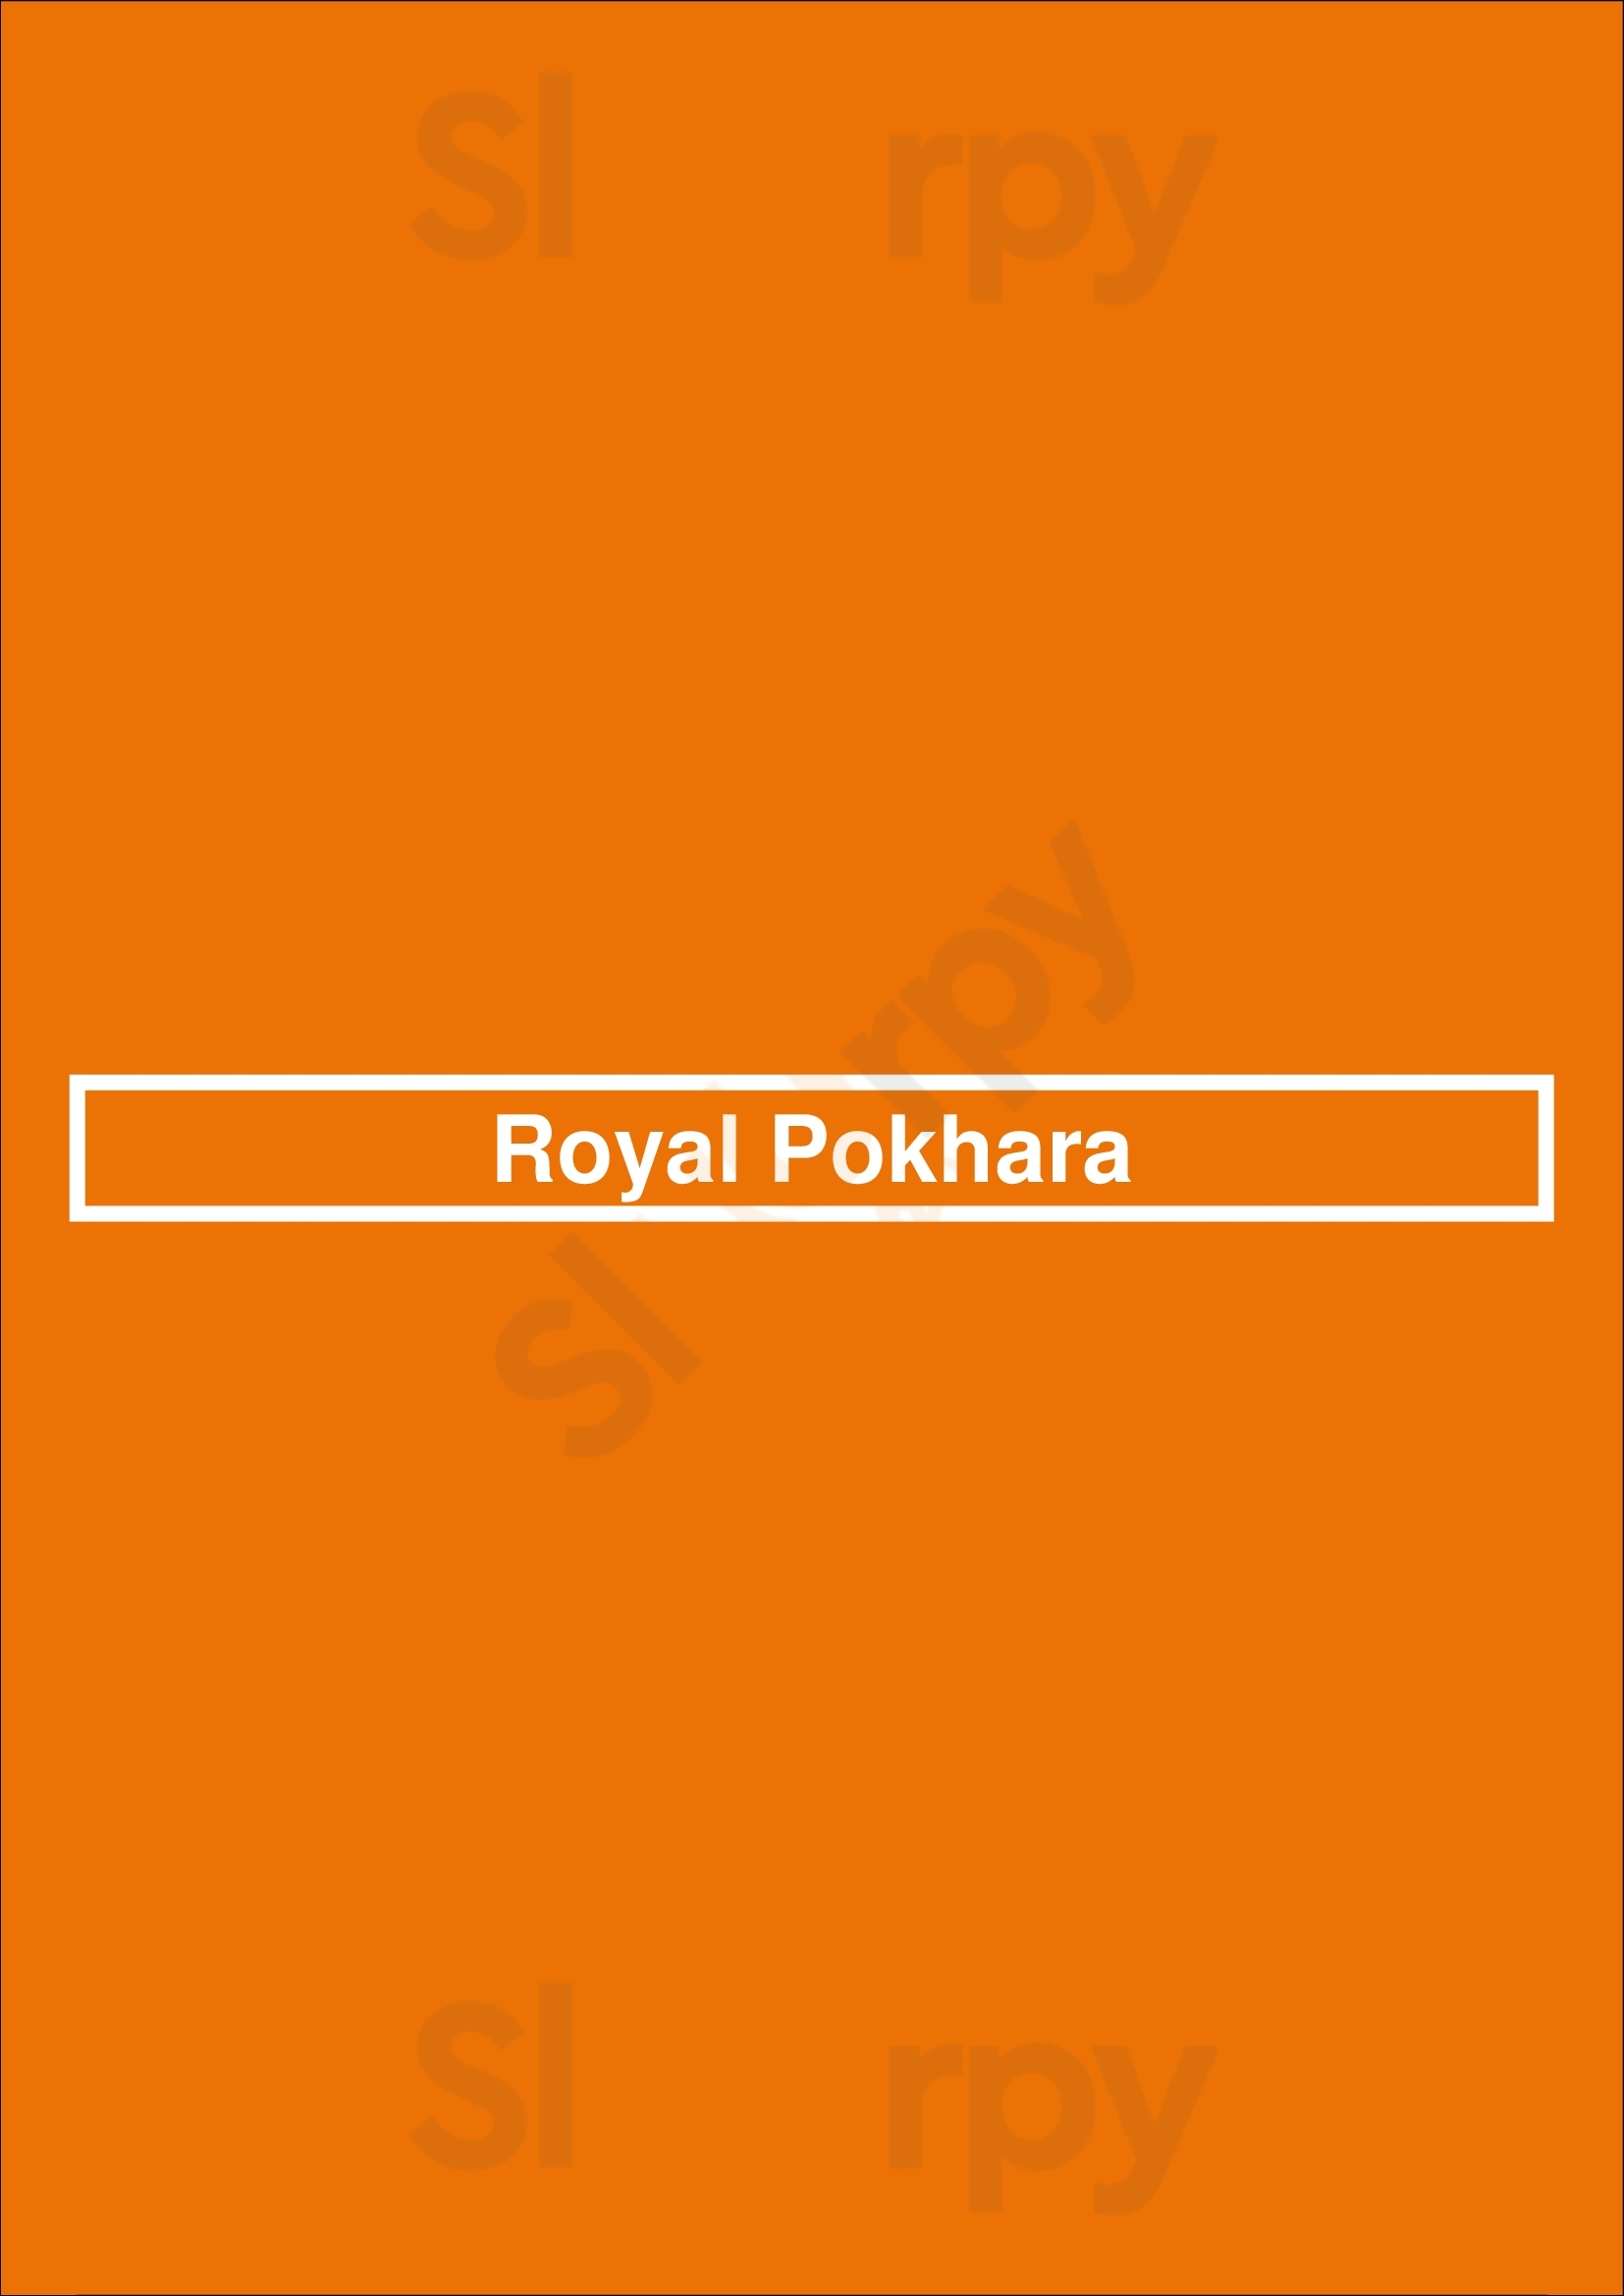 Royal Pokhara Haarlem Menu - 1